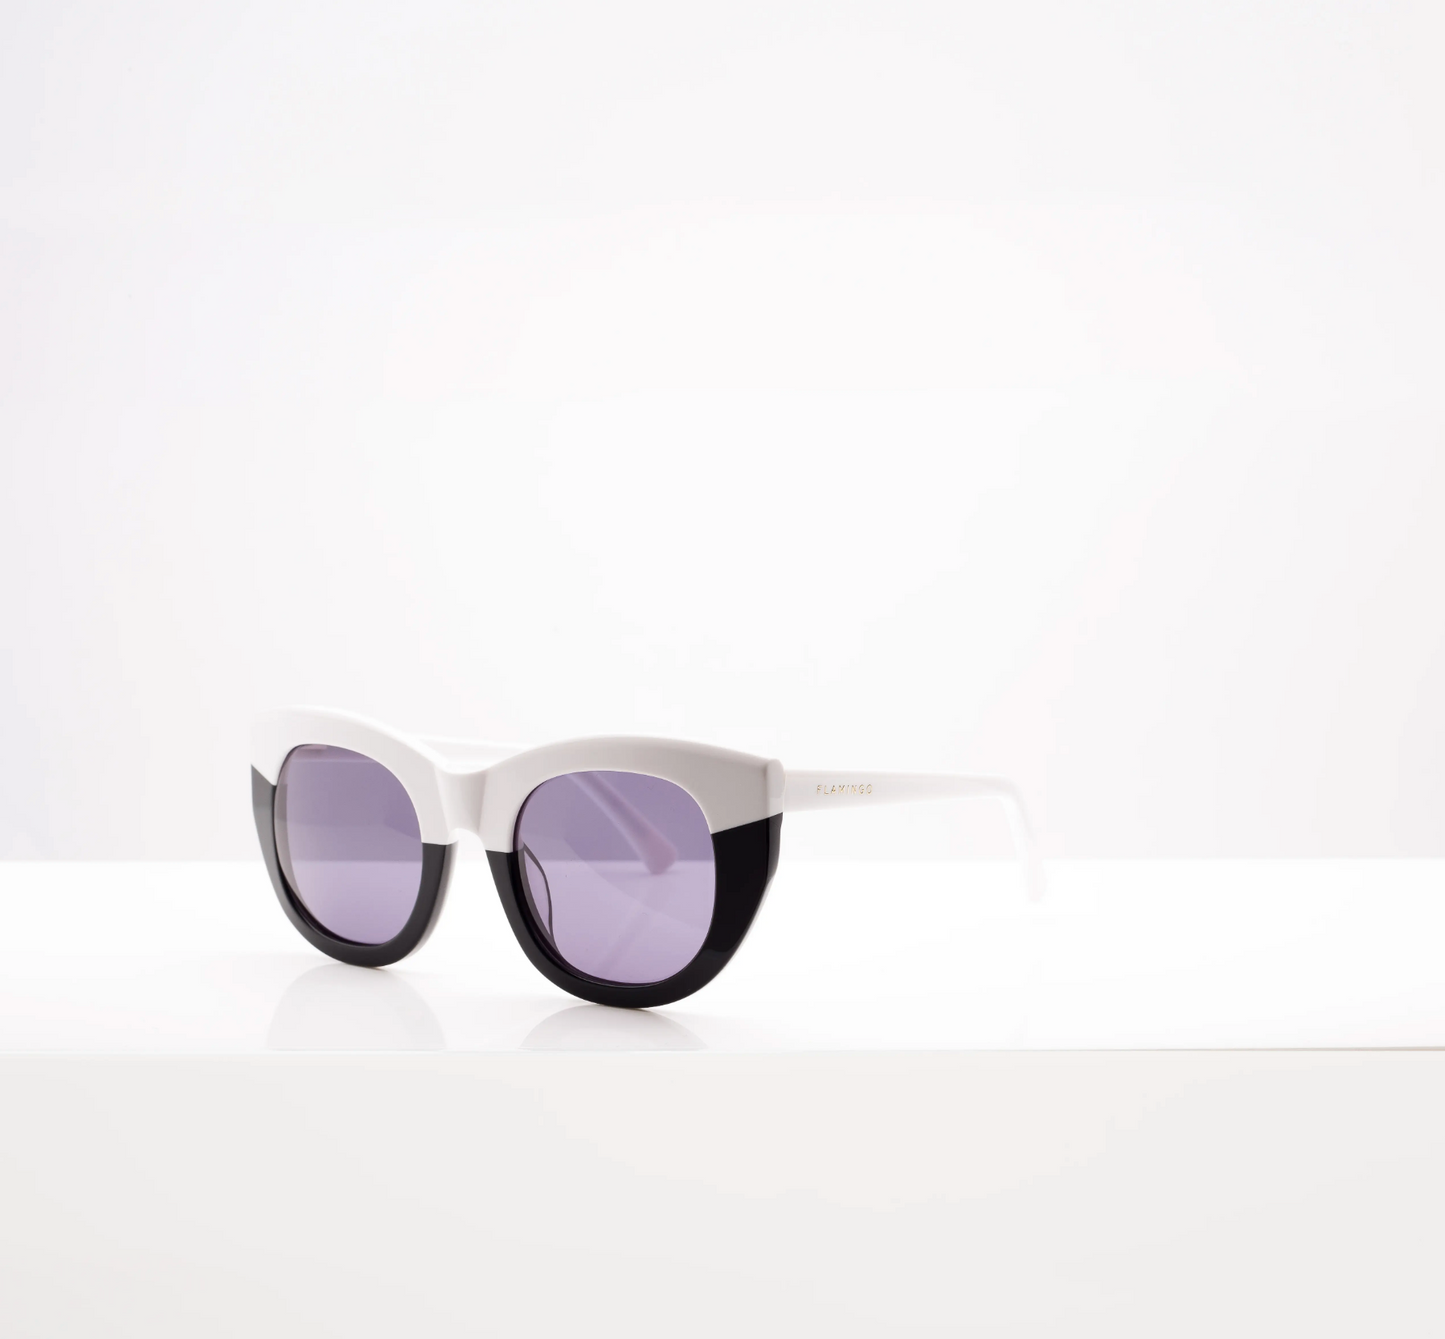 Pacifica Black & White Sunglasses